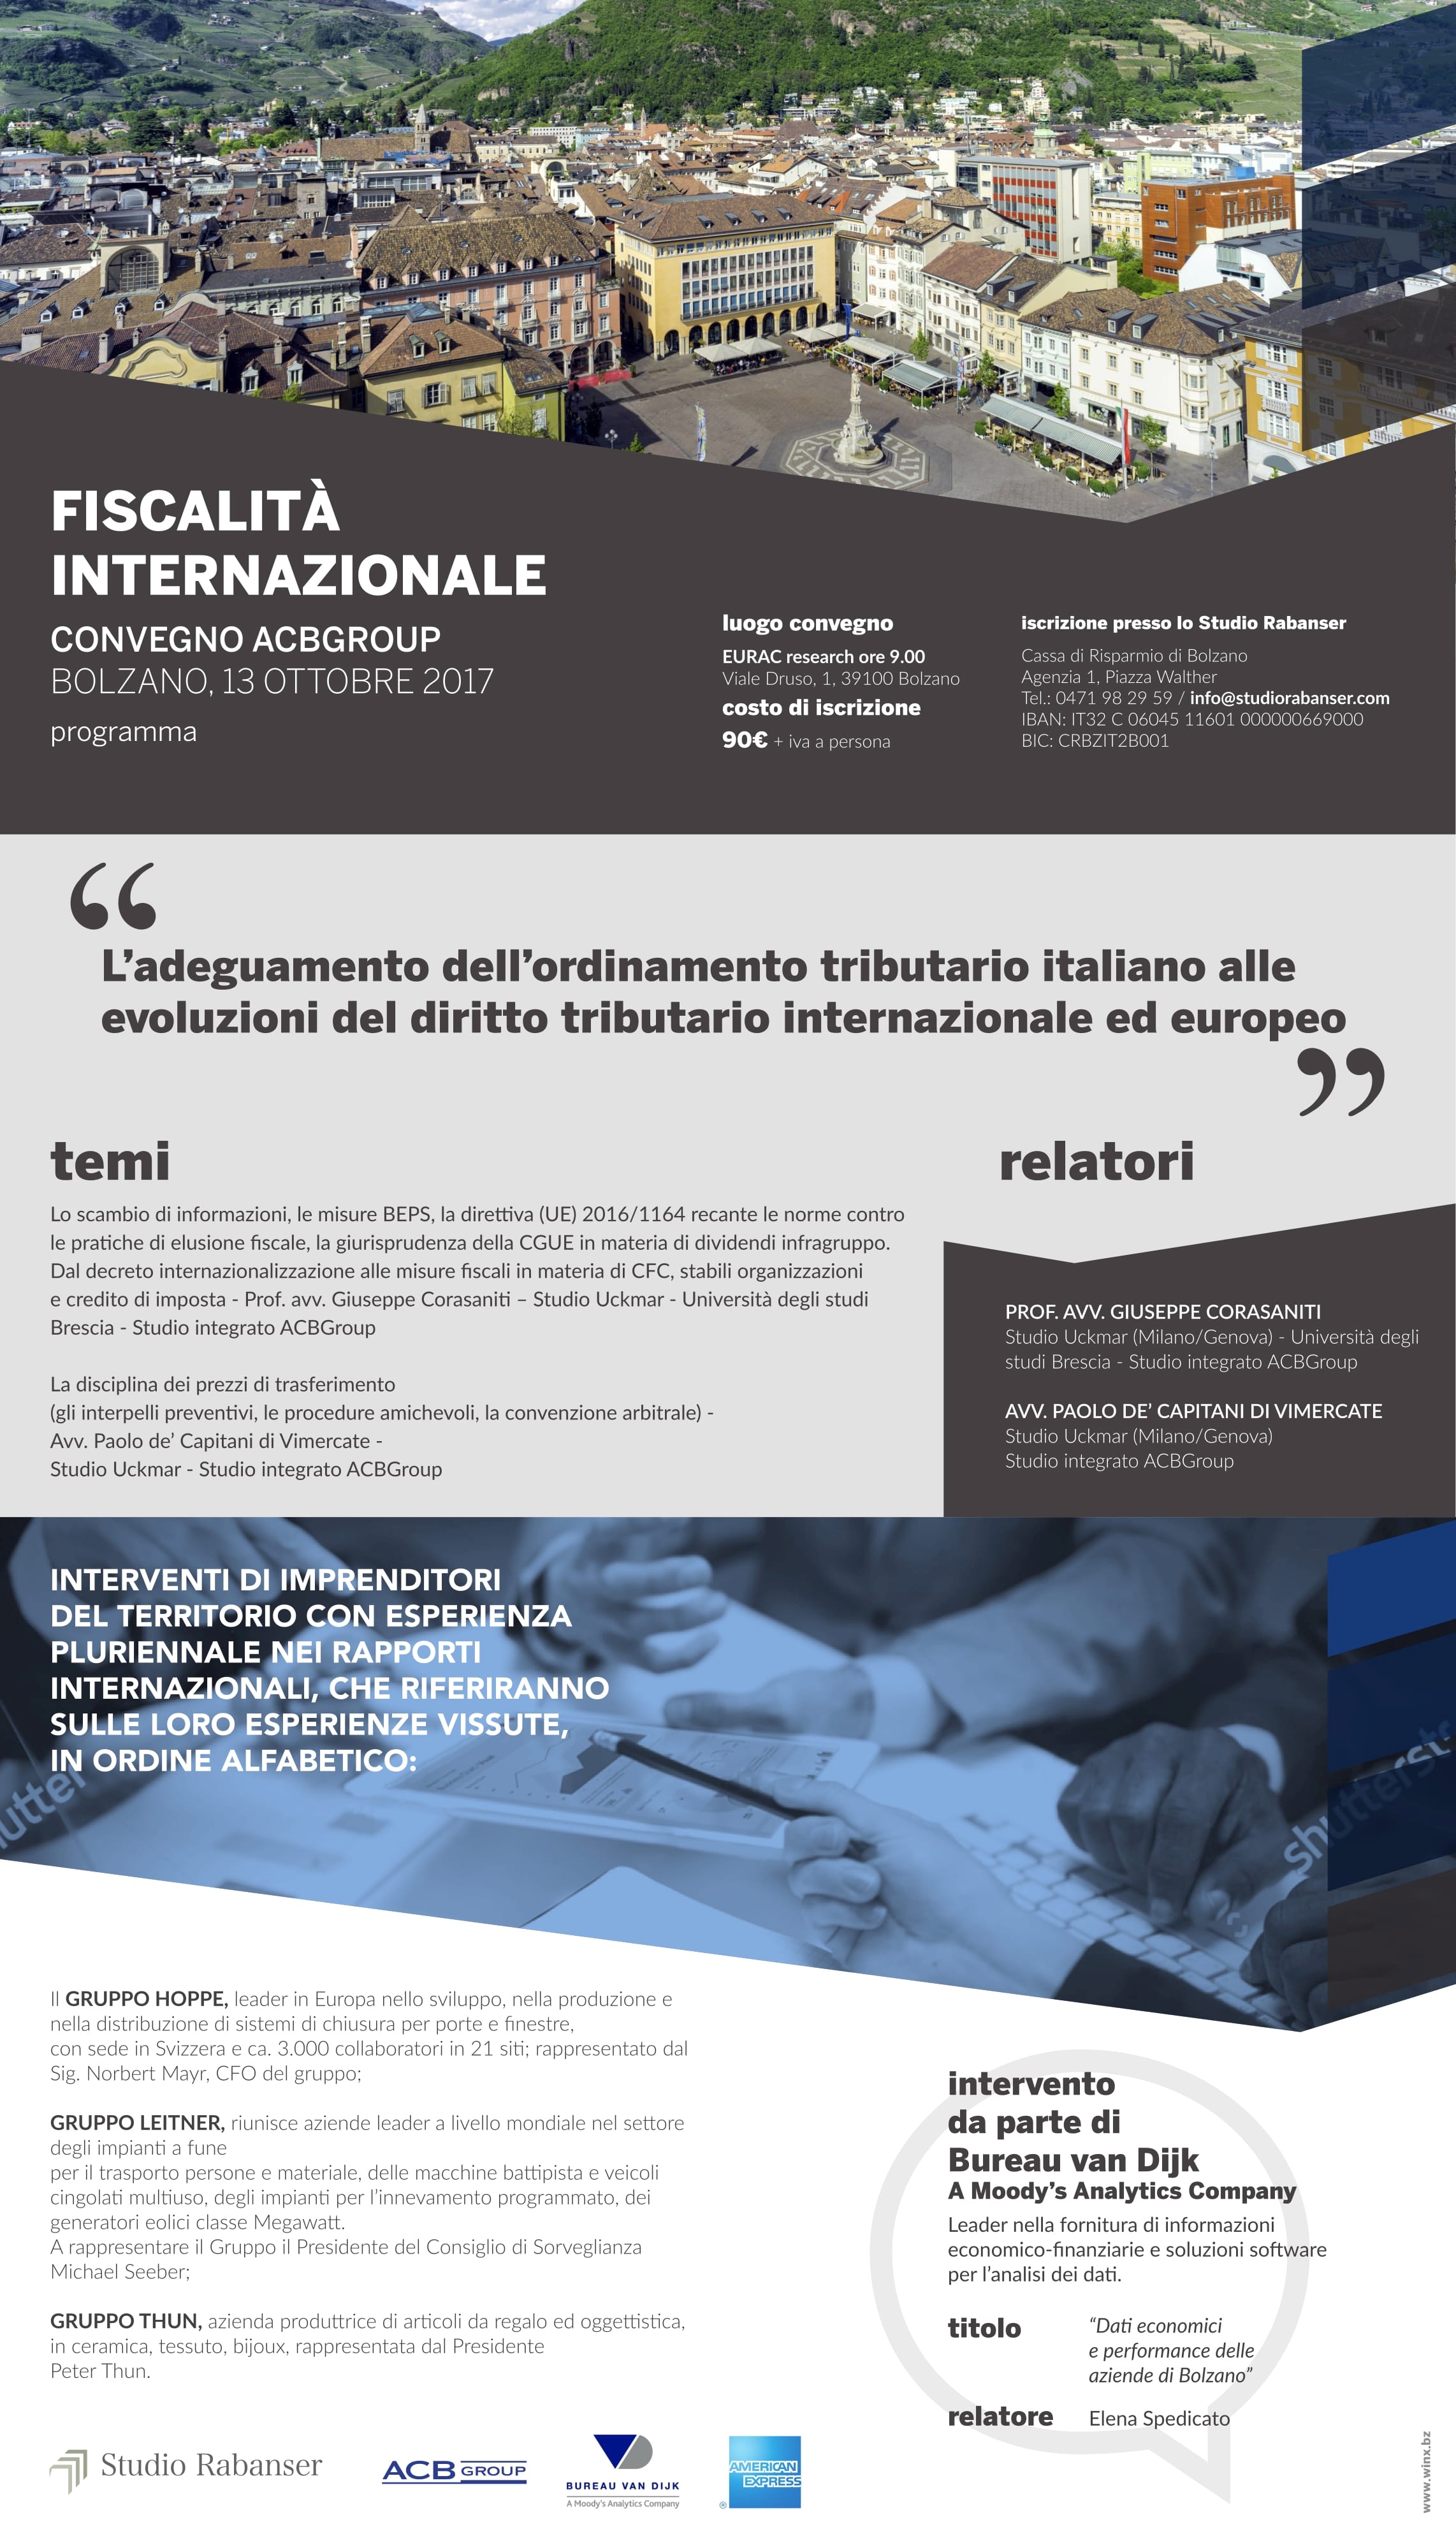 ACBGroup - L’adeguamento dell’ordinamento tributario italiano alle evoluzioni del diritto tributario internazionale ed europeo